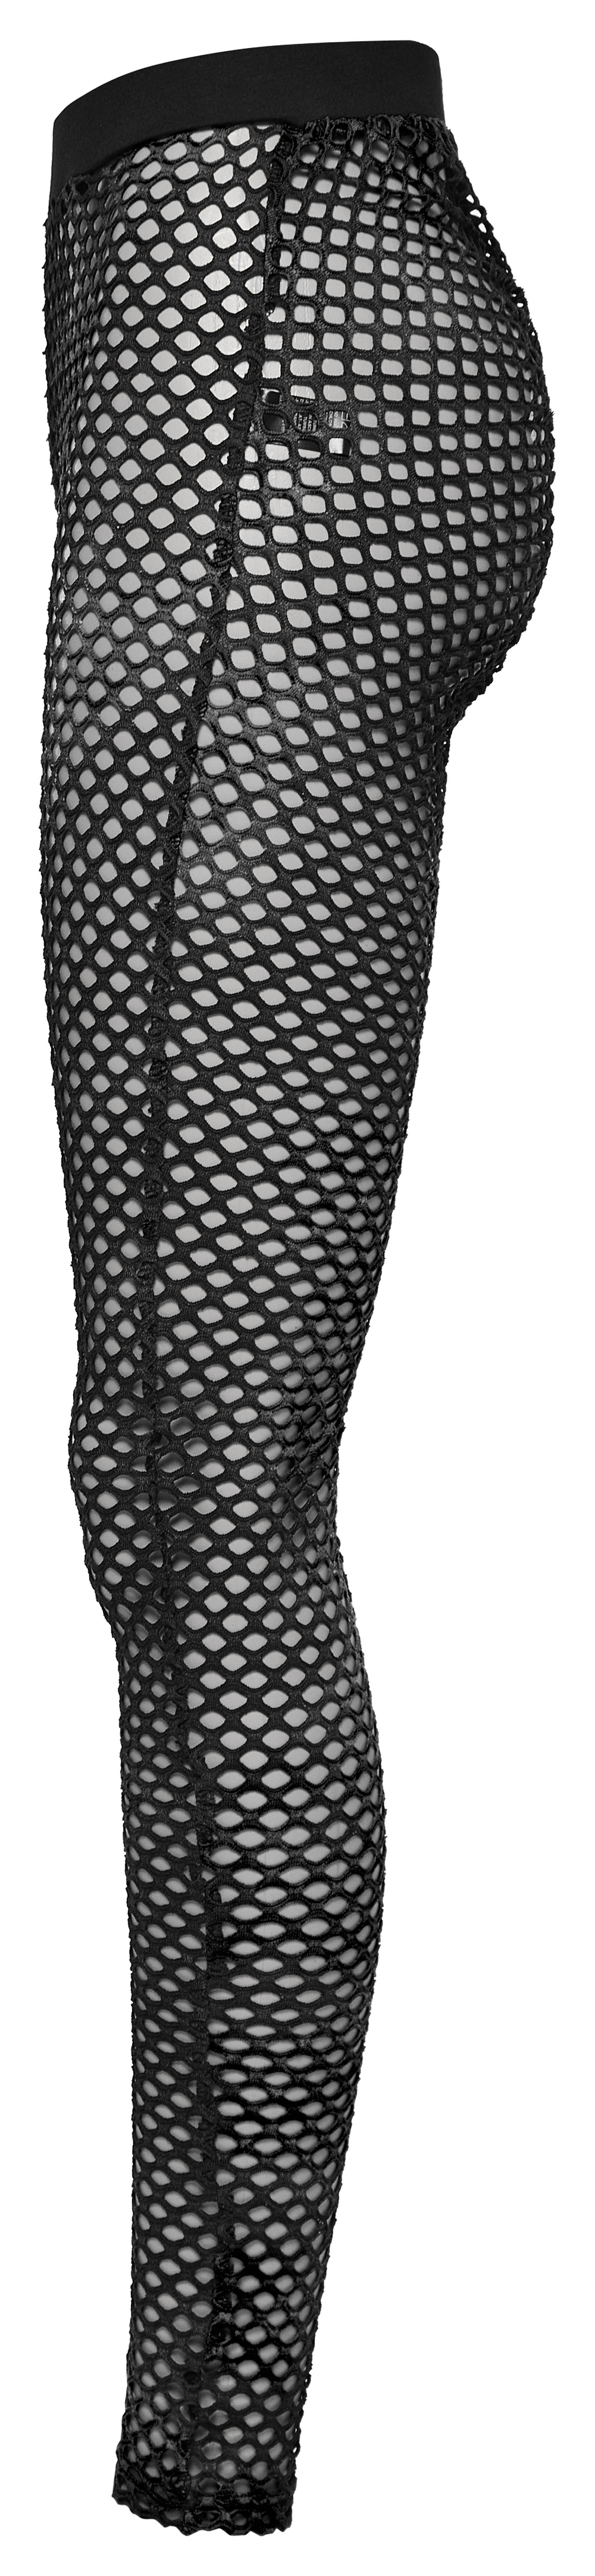 Elastic Punk Black Fishnet Leggings for Women